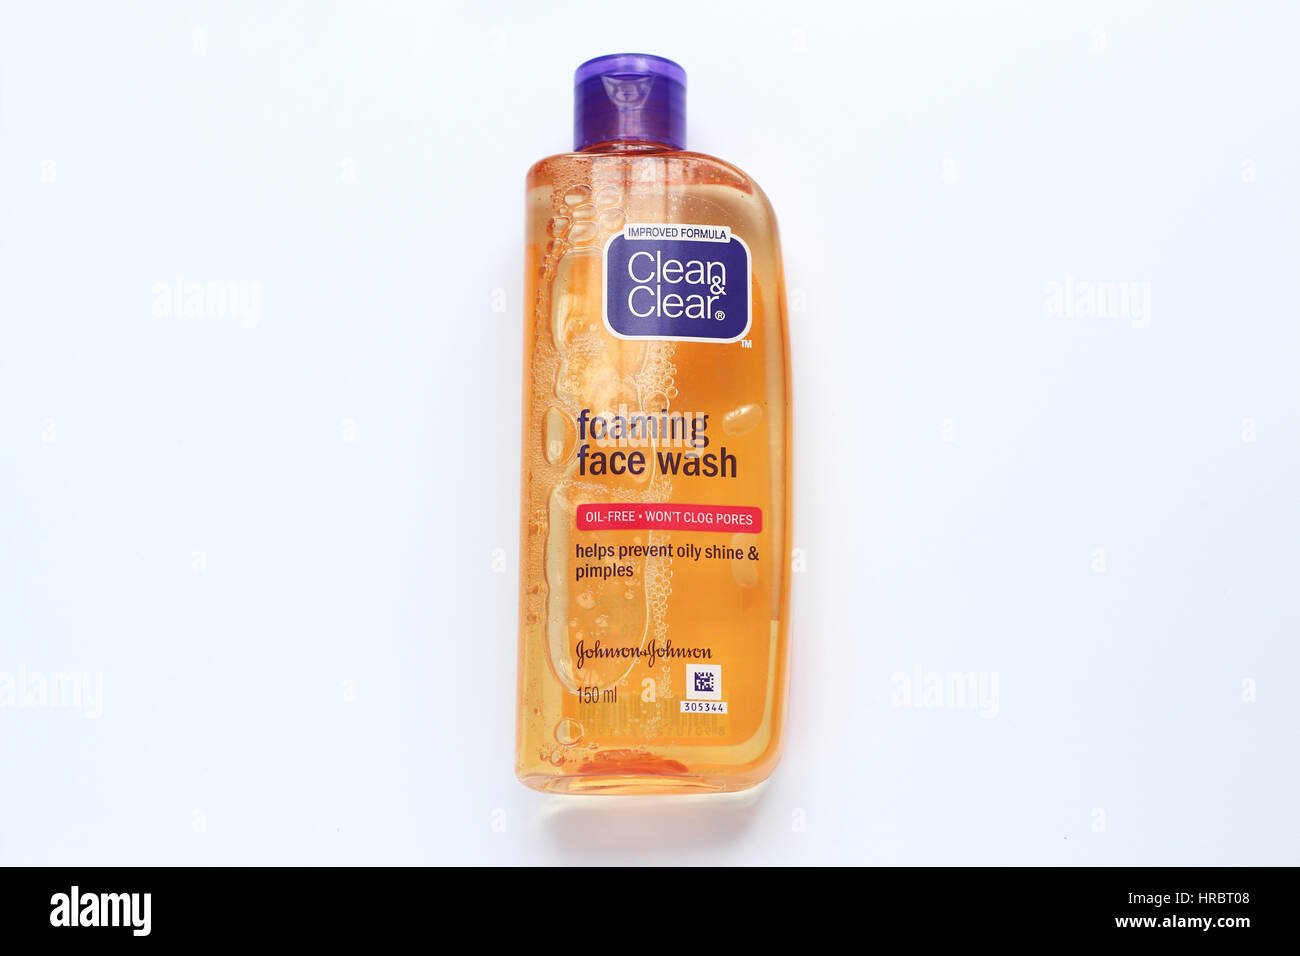 Clean & Clear savon visage moussant contre isolé sur fond blanc Photo Stock  - Alamy